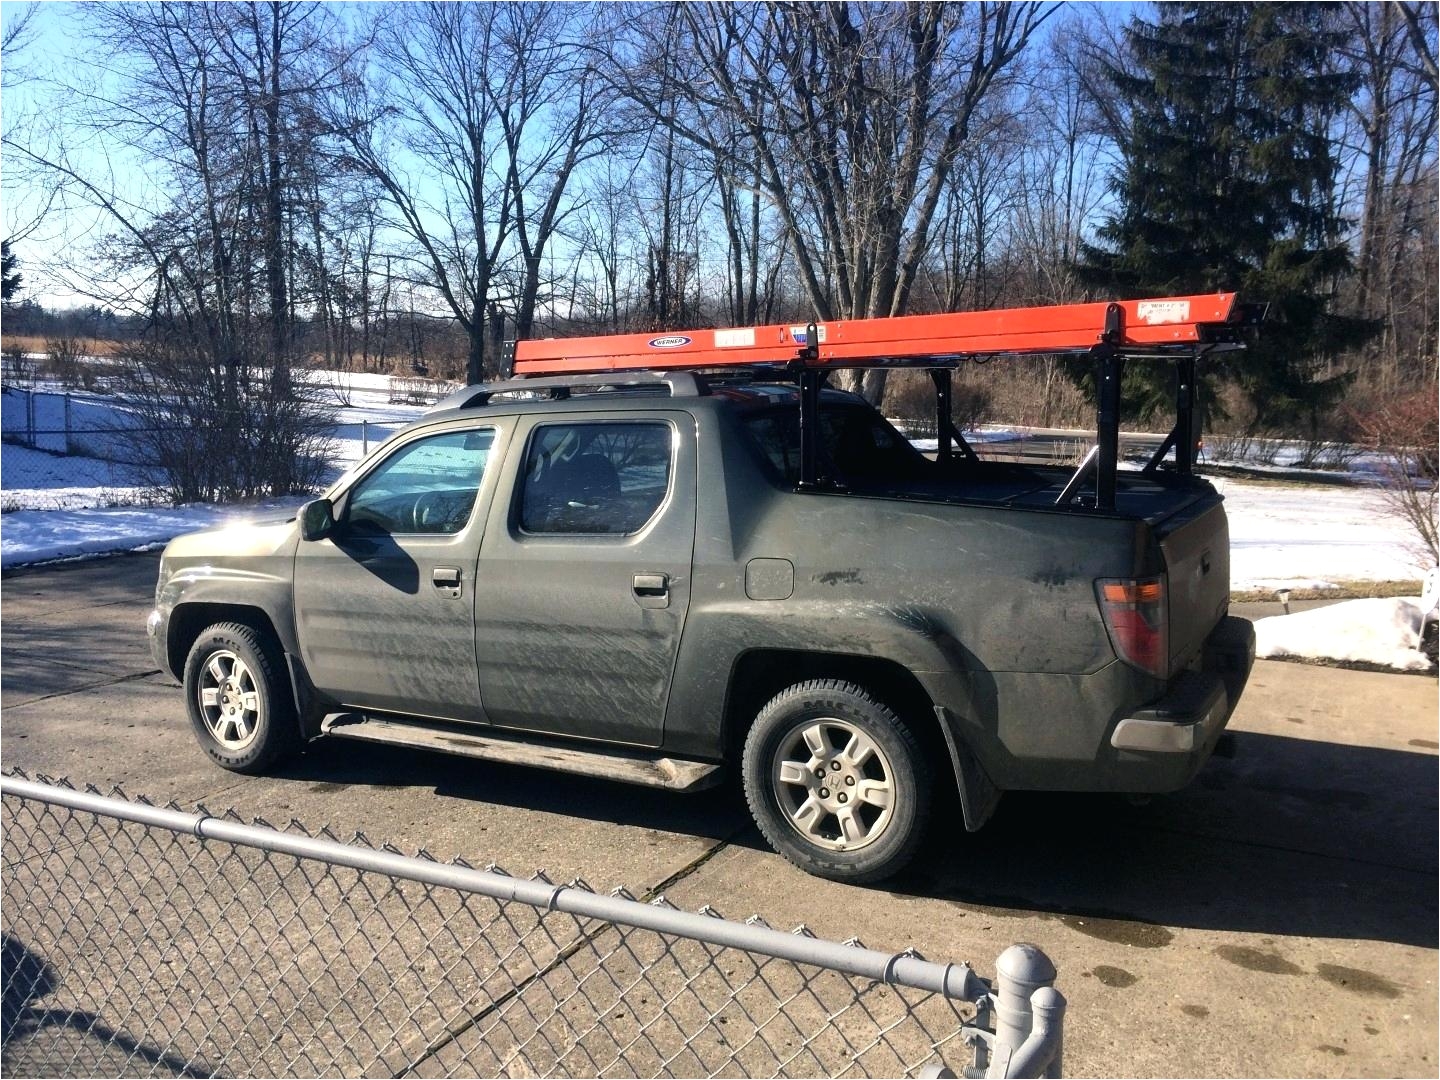 vantech racks ridgele ladder for sale h truck topper honda ridgeline